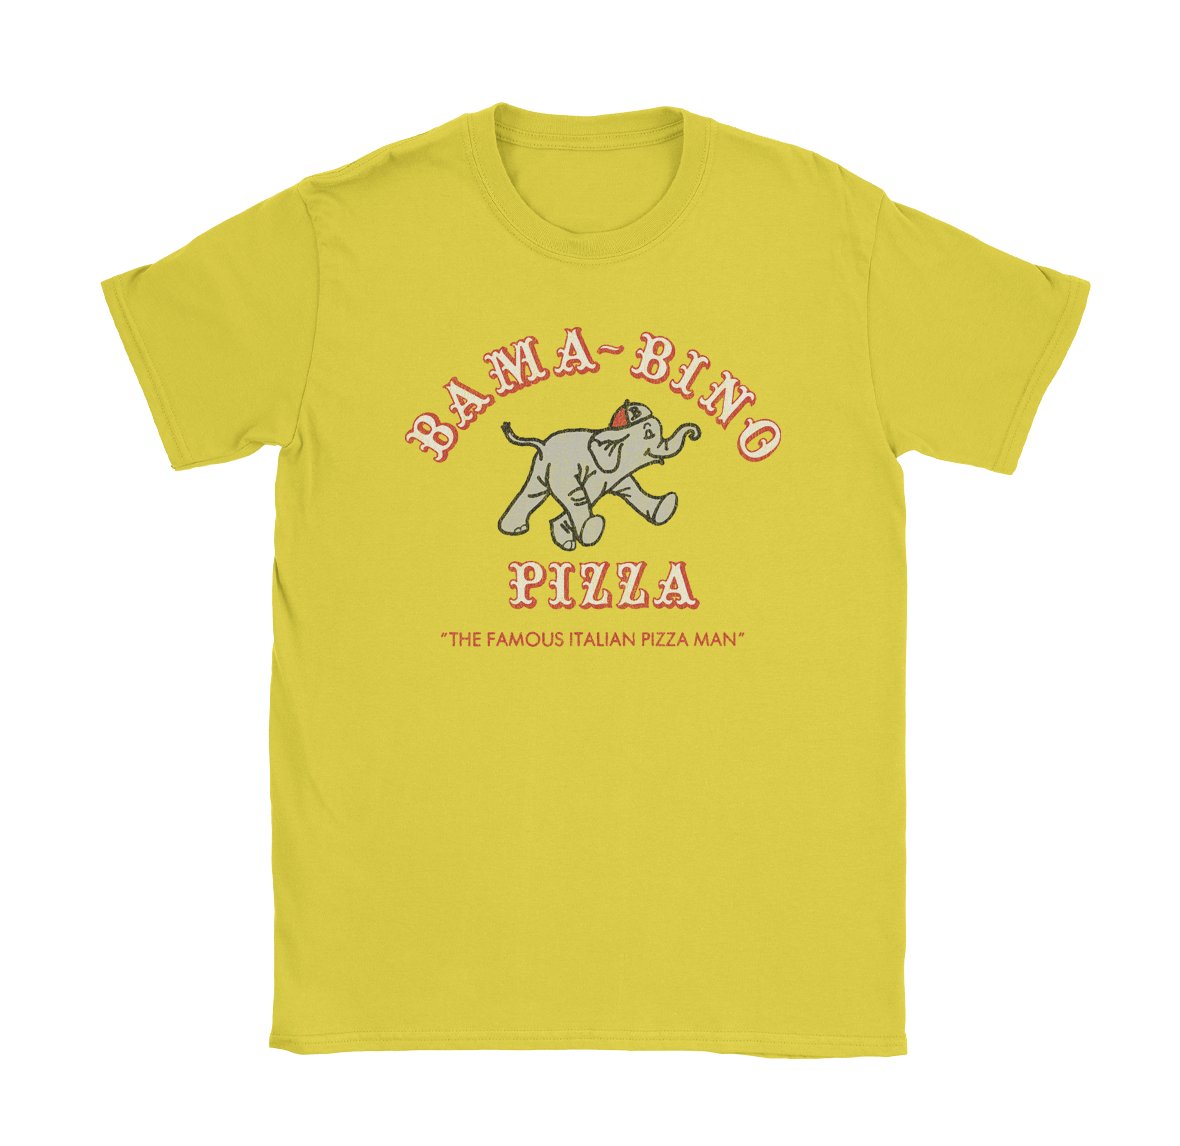 Bama Bino Pizza - Black Cat MFG - T-Shirt